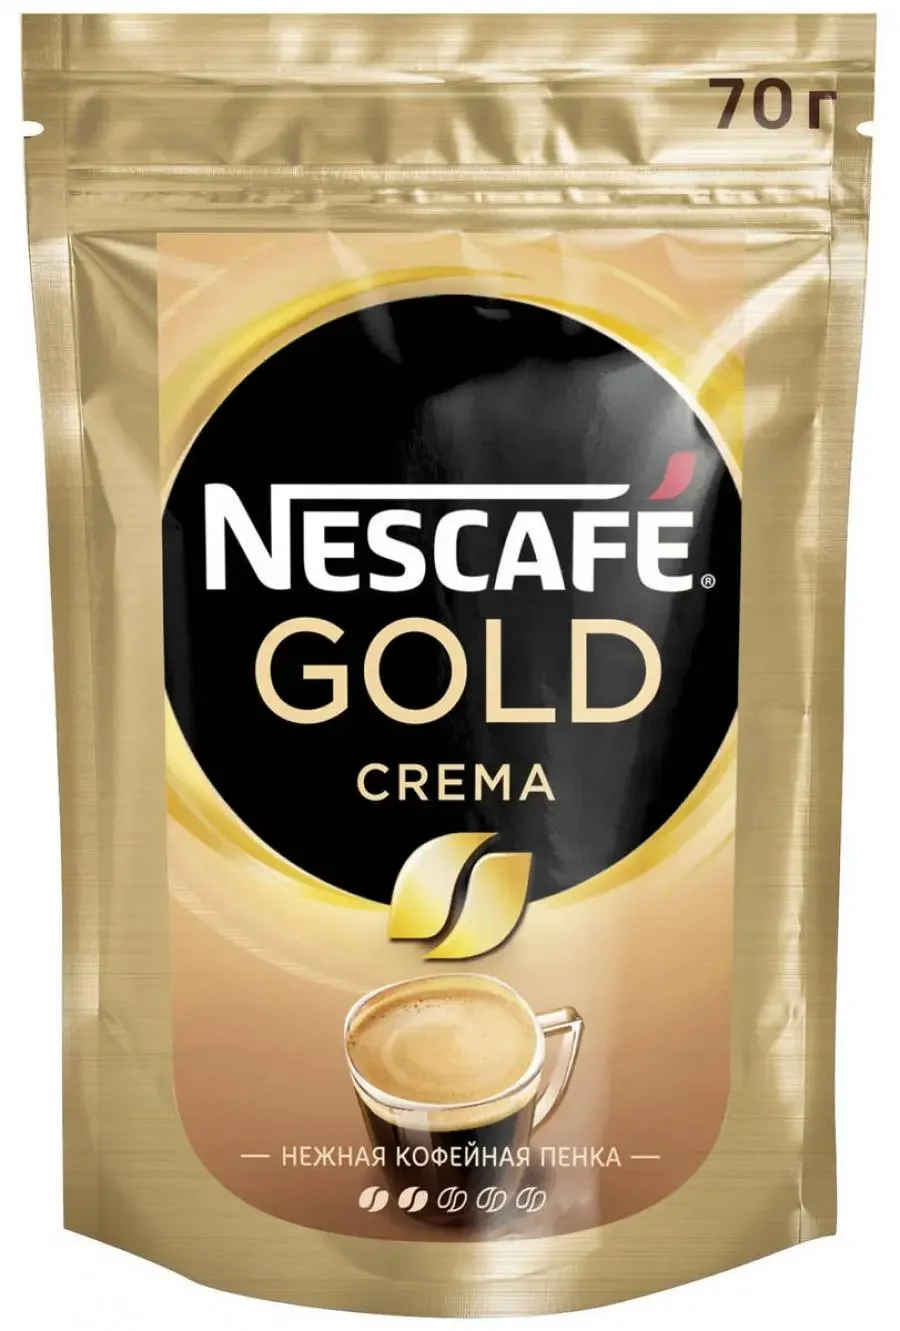 Кофе gold купить. Кофе Nescafe Gold crema растворимый 70г. Кофе Нескафе Голд крема 70г м/у. Нескафе Голд крема 95 гр. Кофе Нескафе Голд нежная пенка.